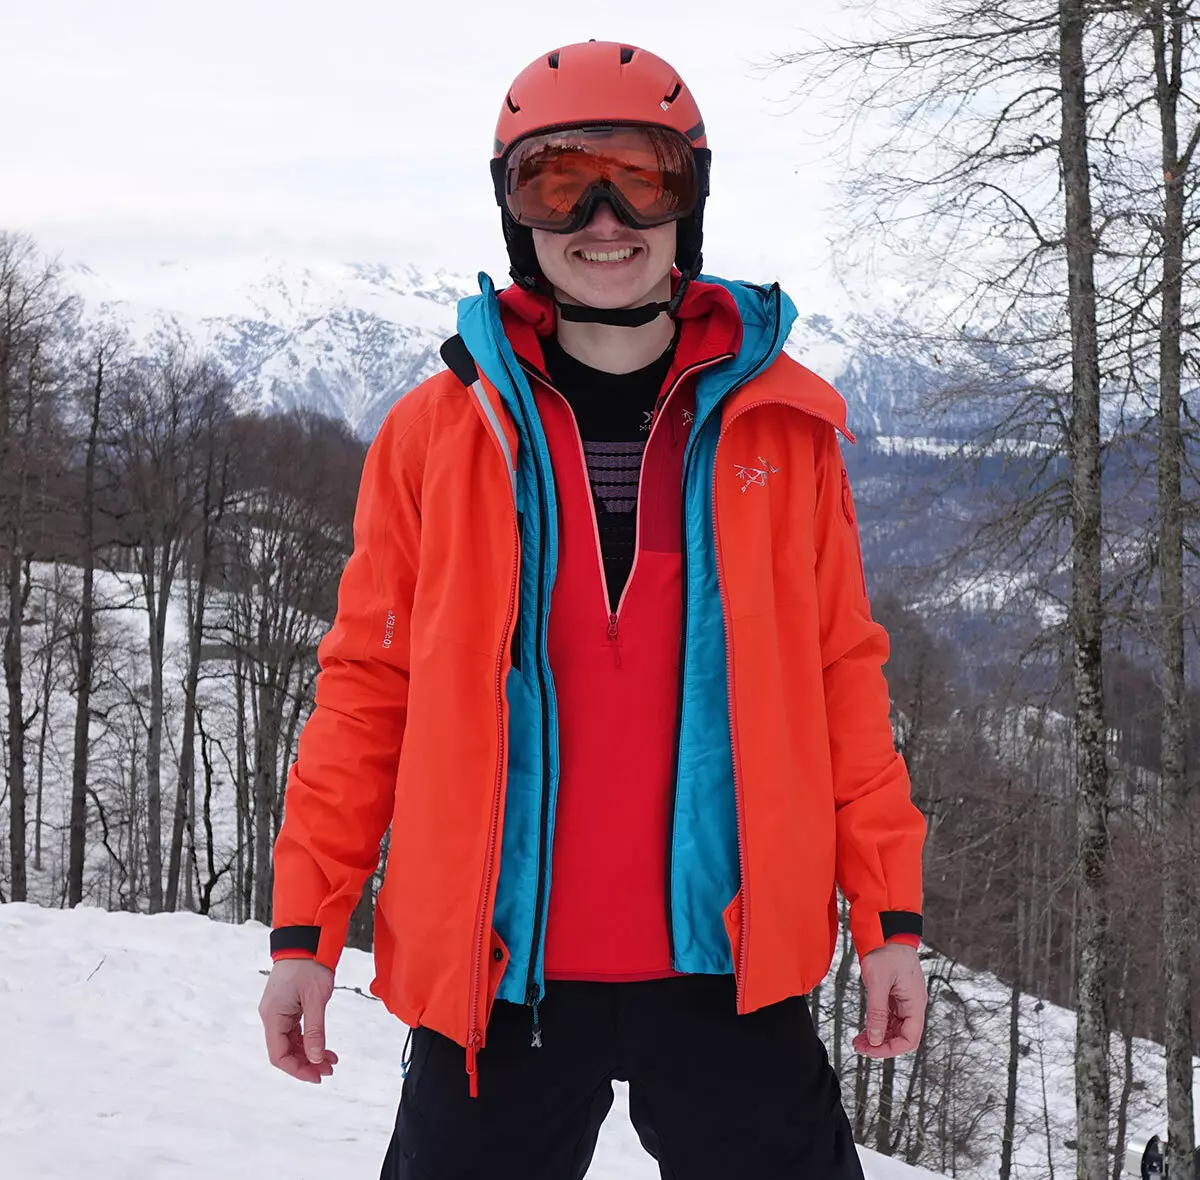 Skiová bunda: Dámská zimní bunda pro běžecké lyžování, zahřívací dětské a dospělé lyžařové bundy. Jak si vybrat bruslení? 20201_6